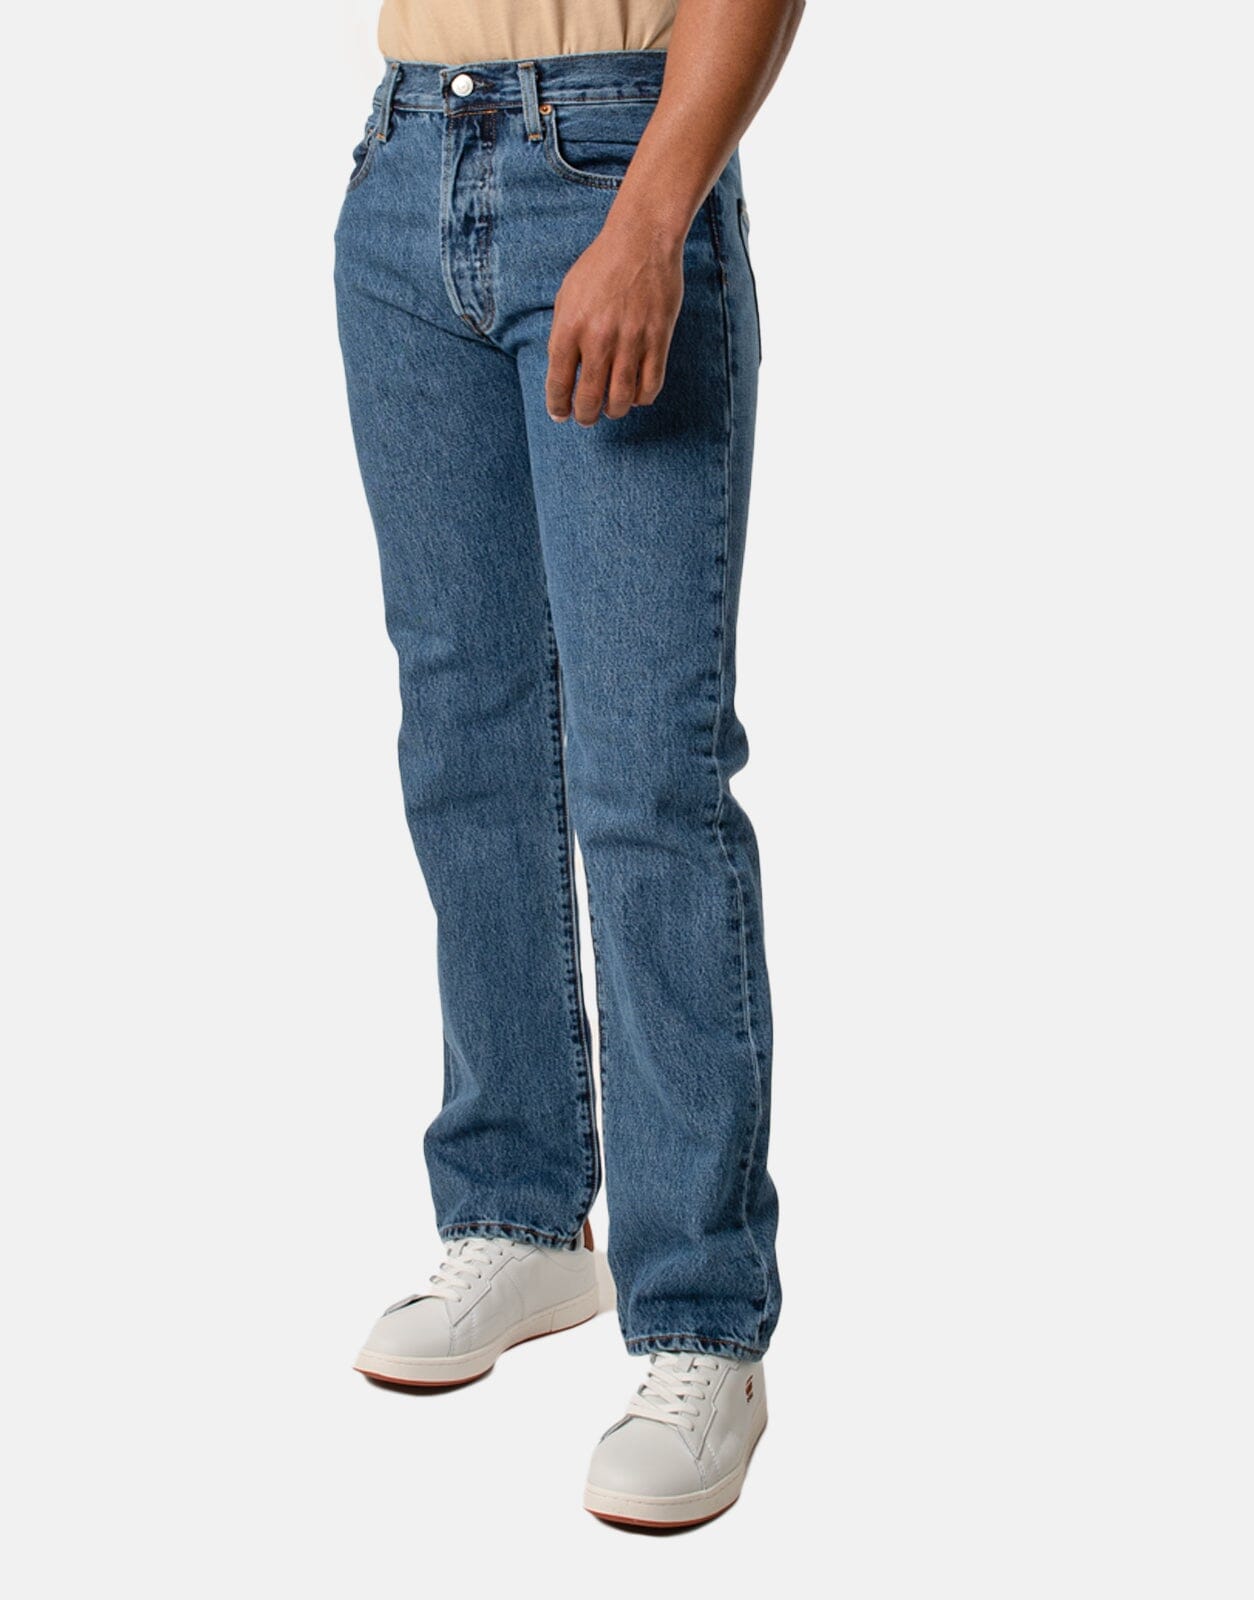 Levi's 501 Original Medium Stonewash Jeans - Subwear